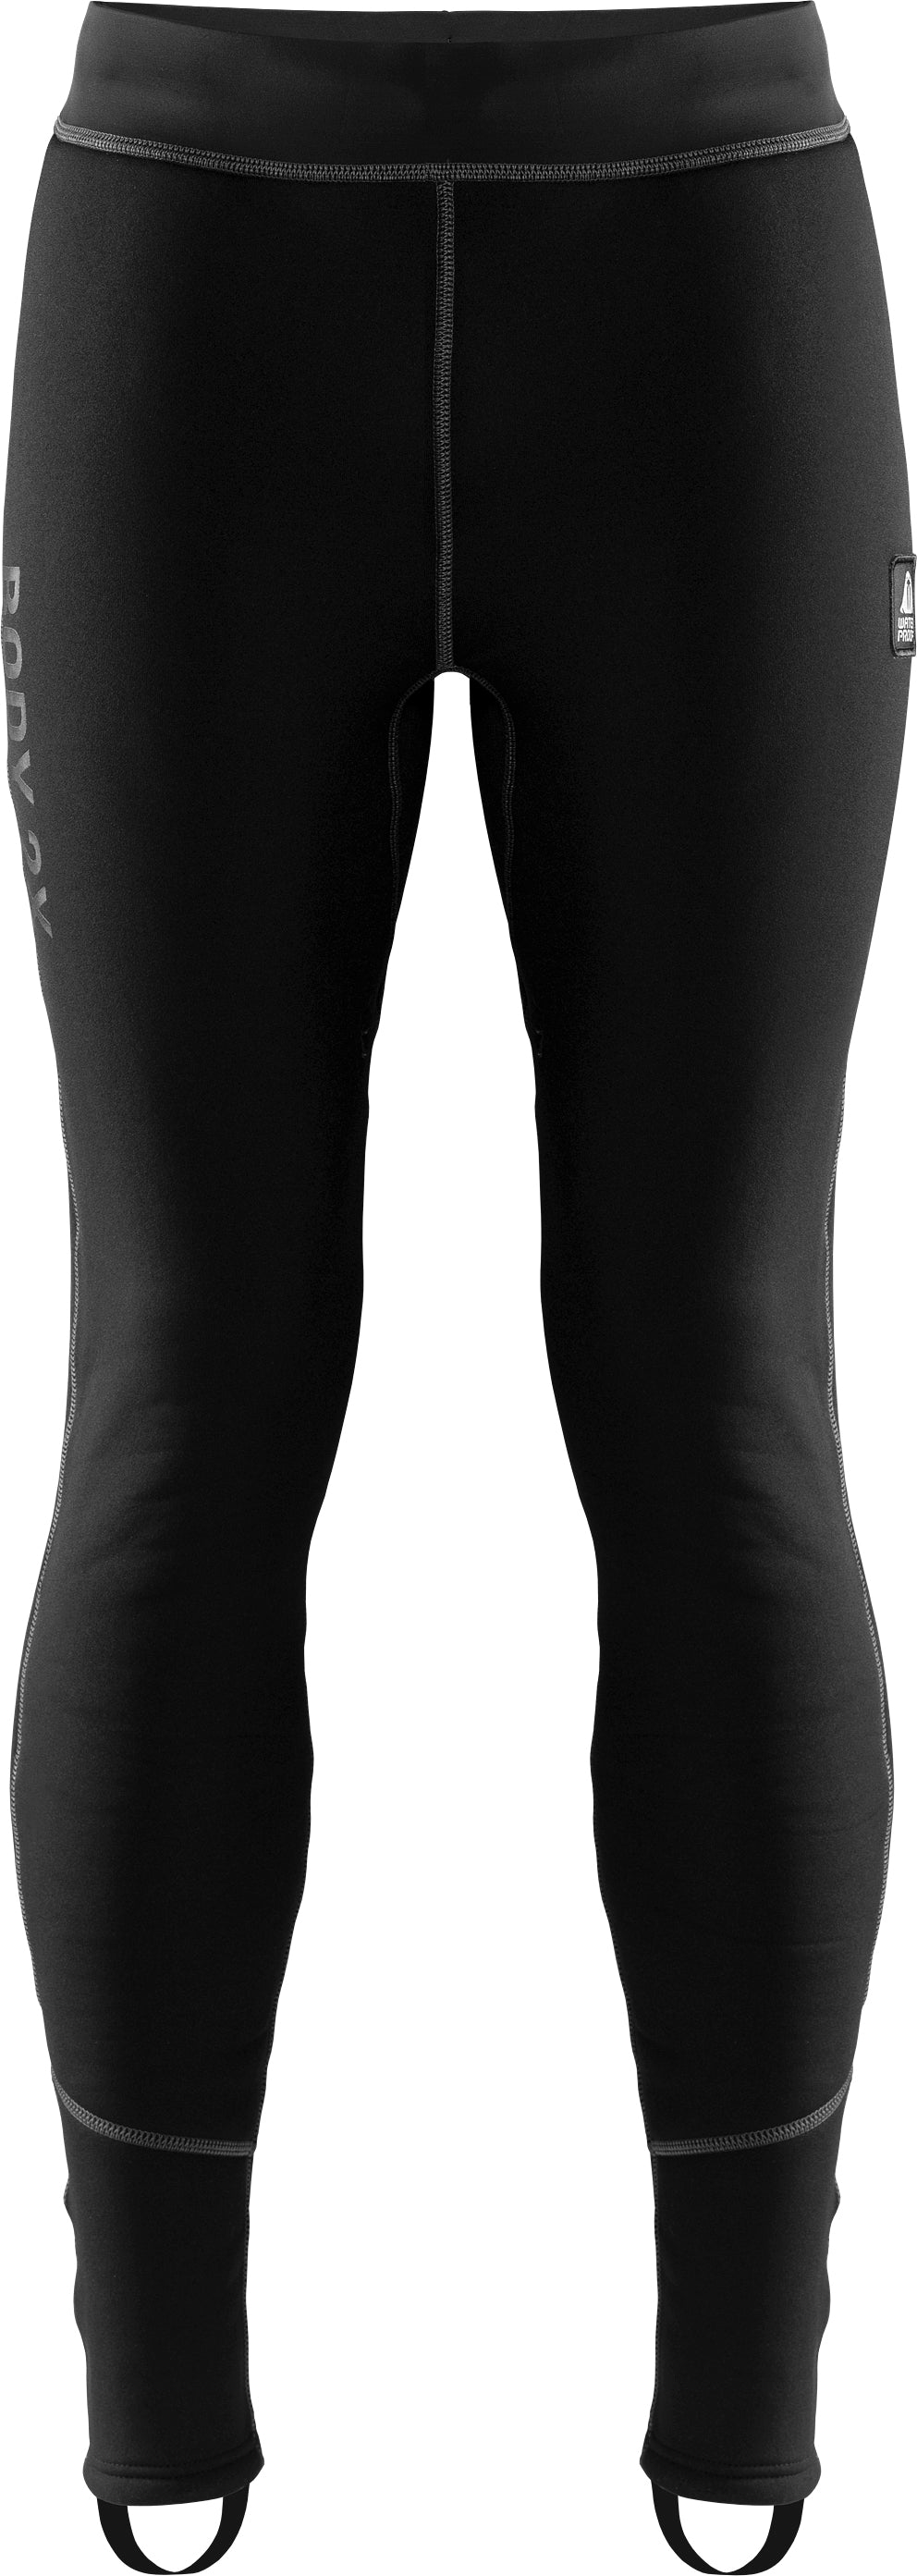 Waterproof Body 2X Undersuit Pants Mens